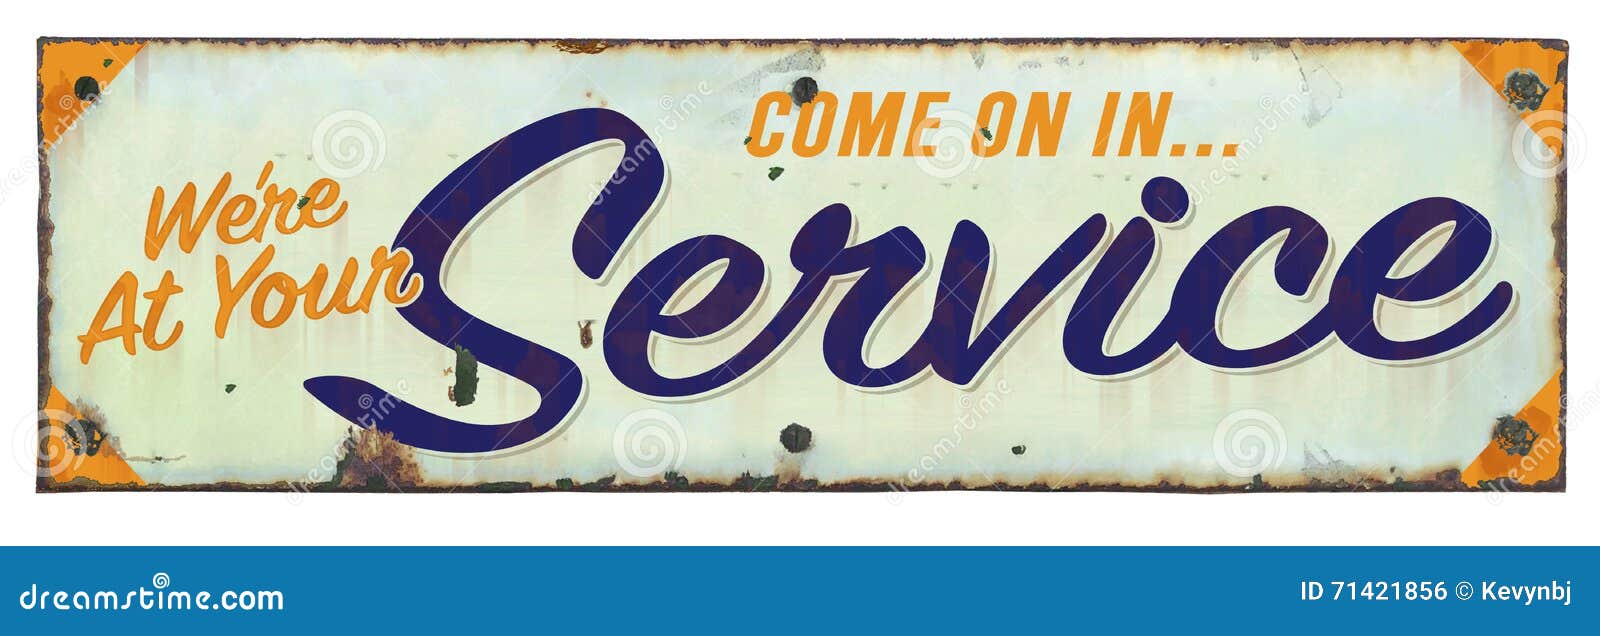 retro service sign